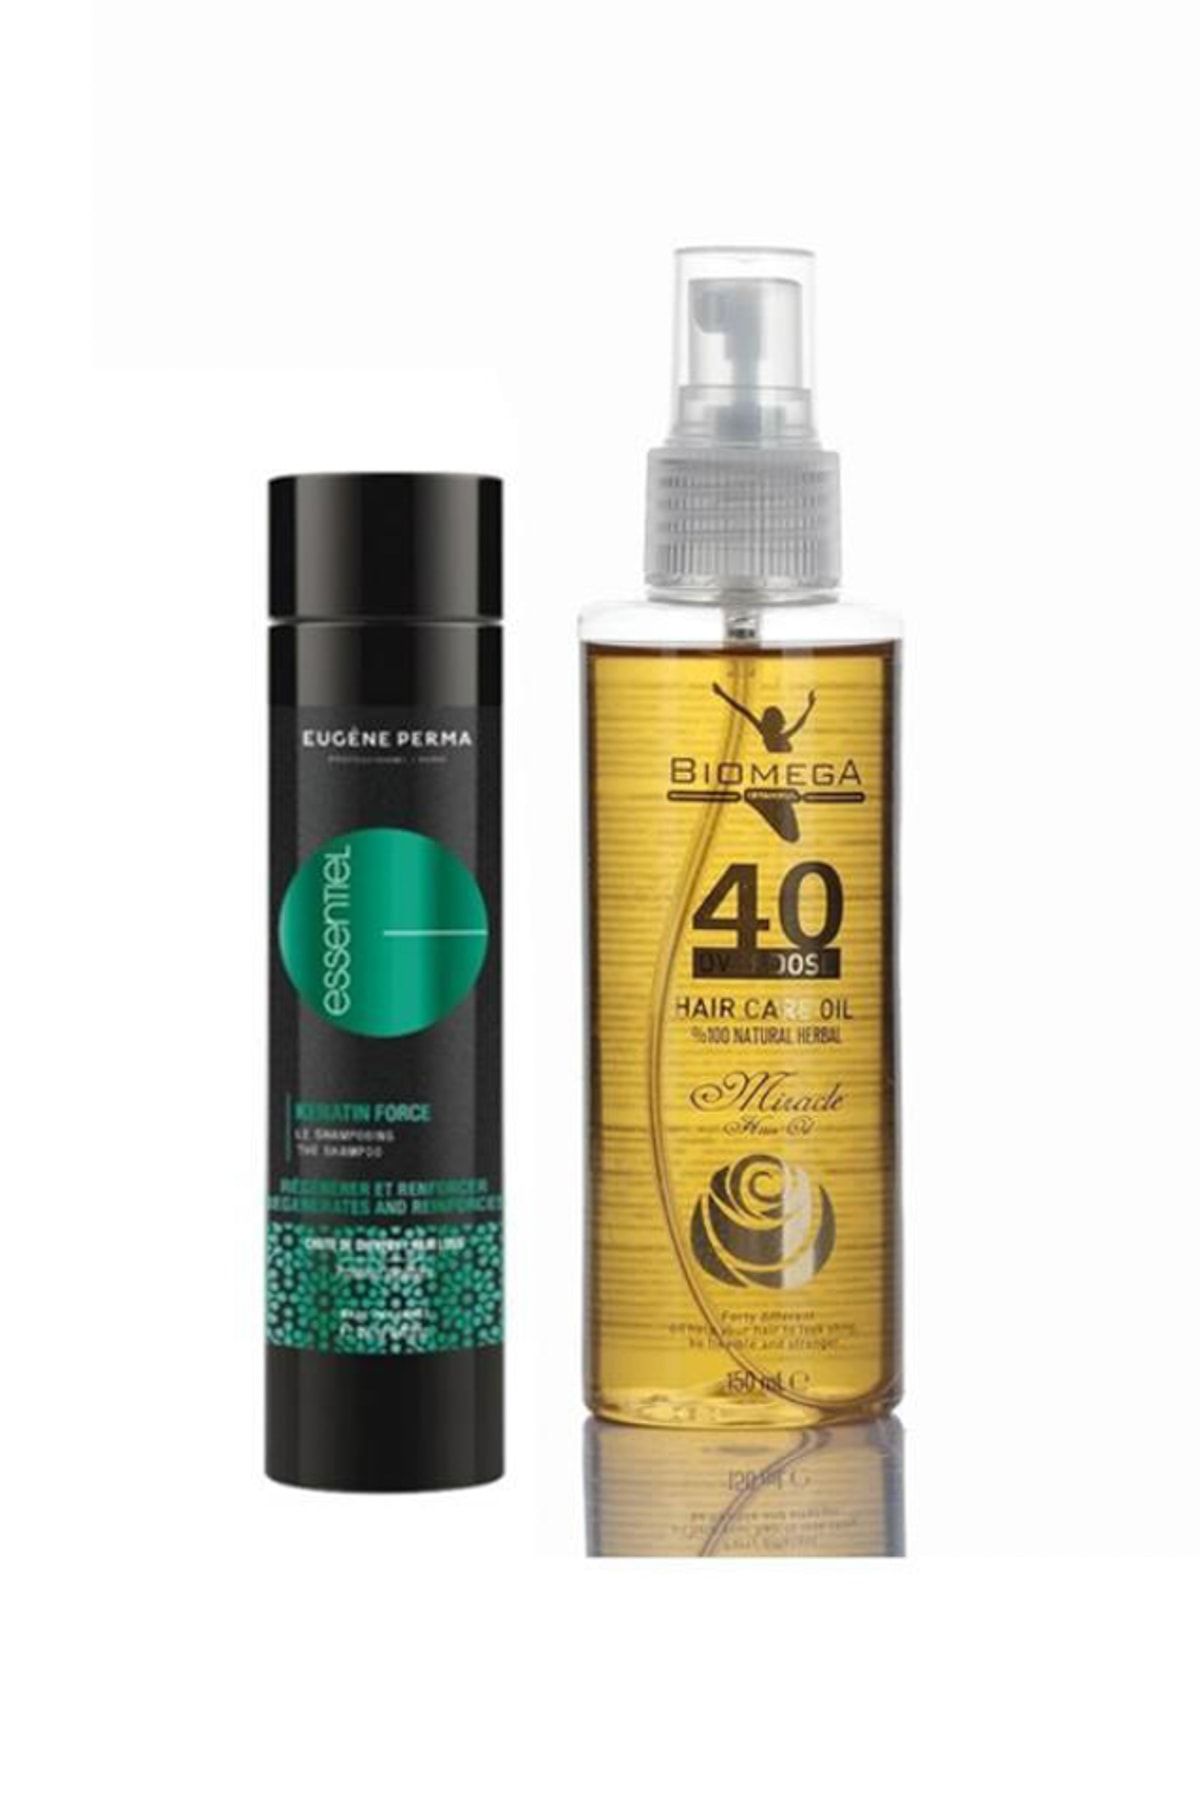 Eugene Perma Essentiel Keratin Force Şampuan 250 ml+Biomega 40 Bitkili Doğal Saç Bakım Yağı 150 ml 558956116557